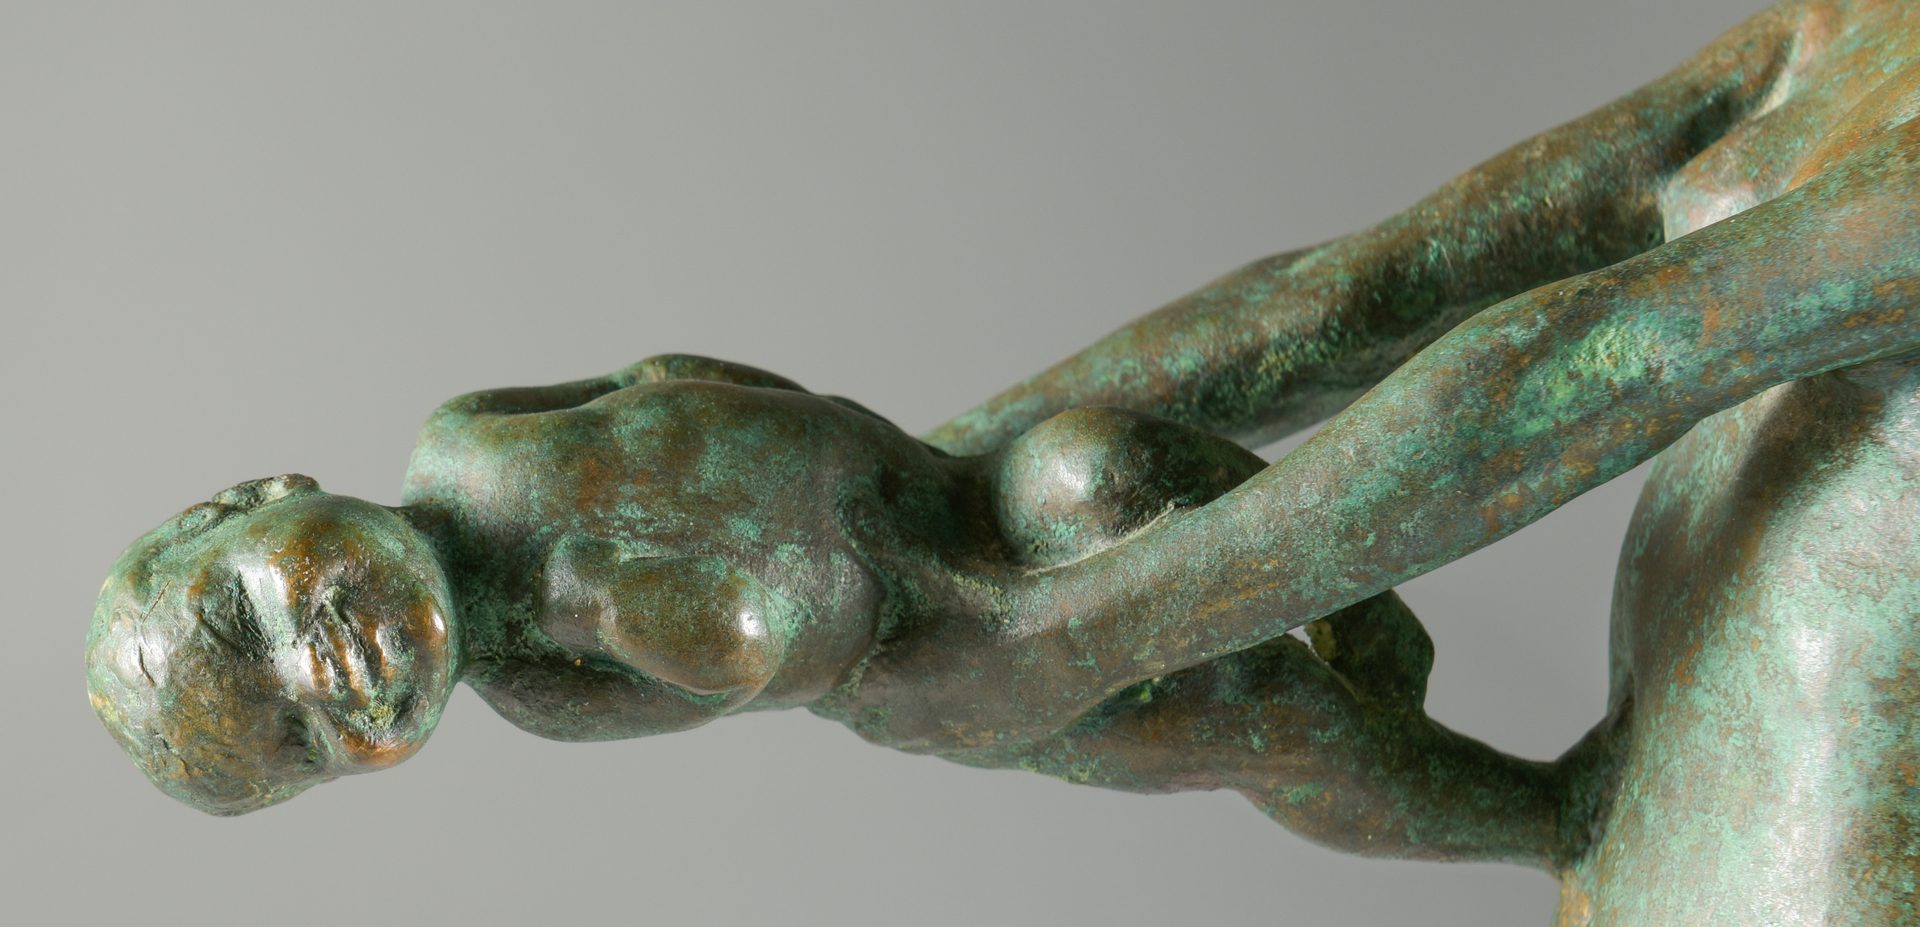 Lot 154: Edith Parsons Bronze Sculpture,"Joy"